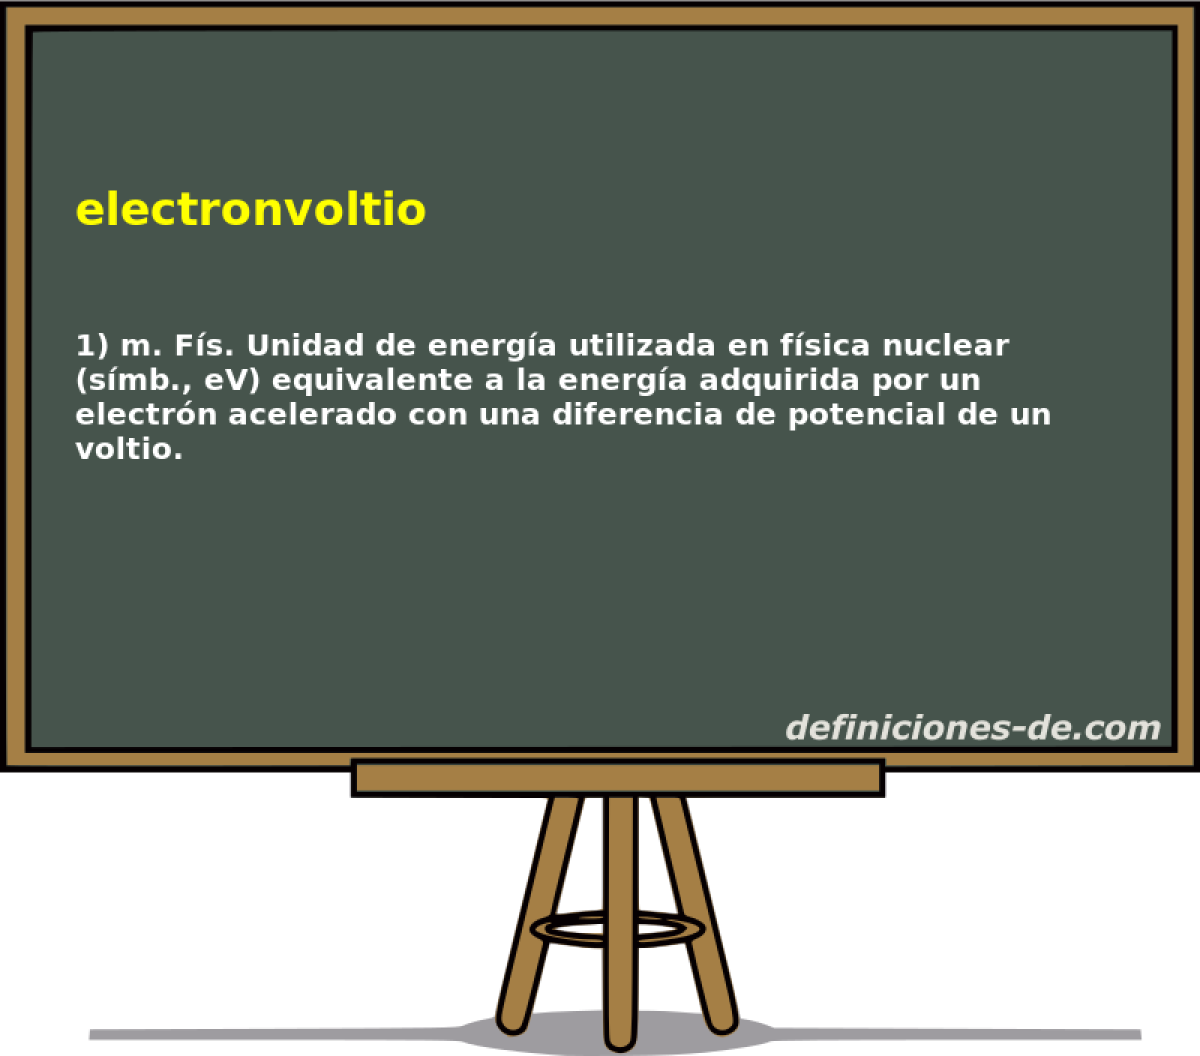 electronvoltio 